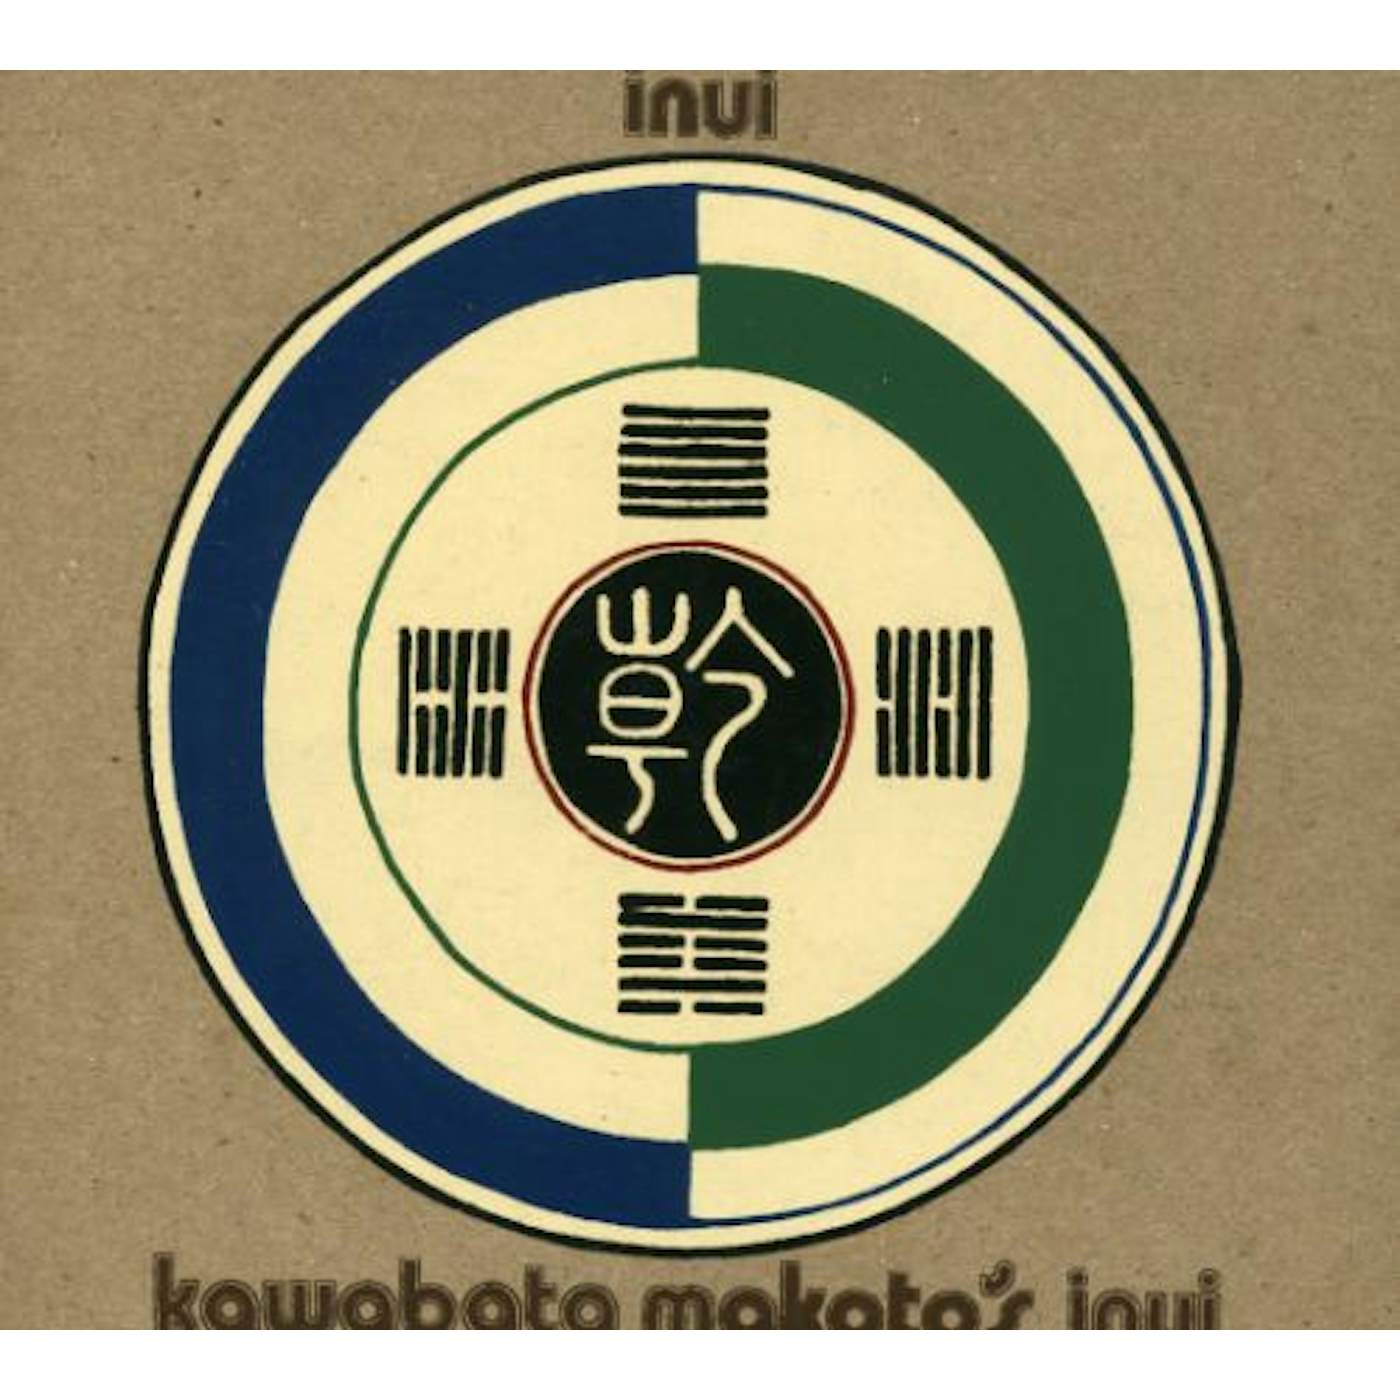 Kawabata Makoto INUI.1 CD